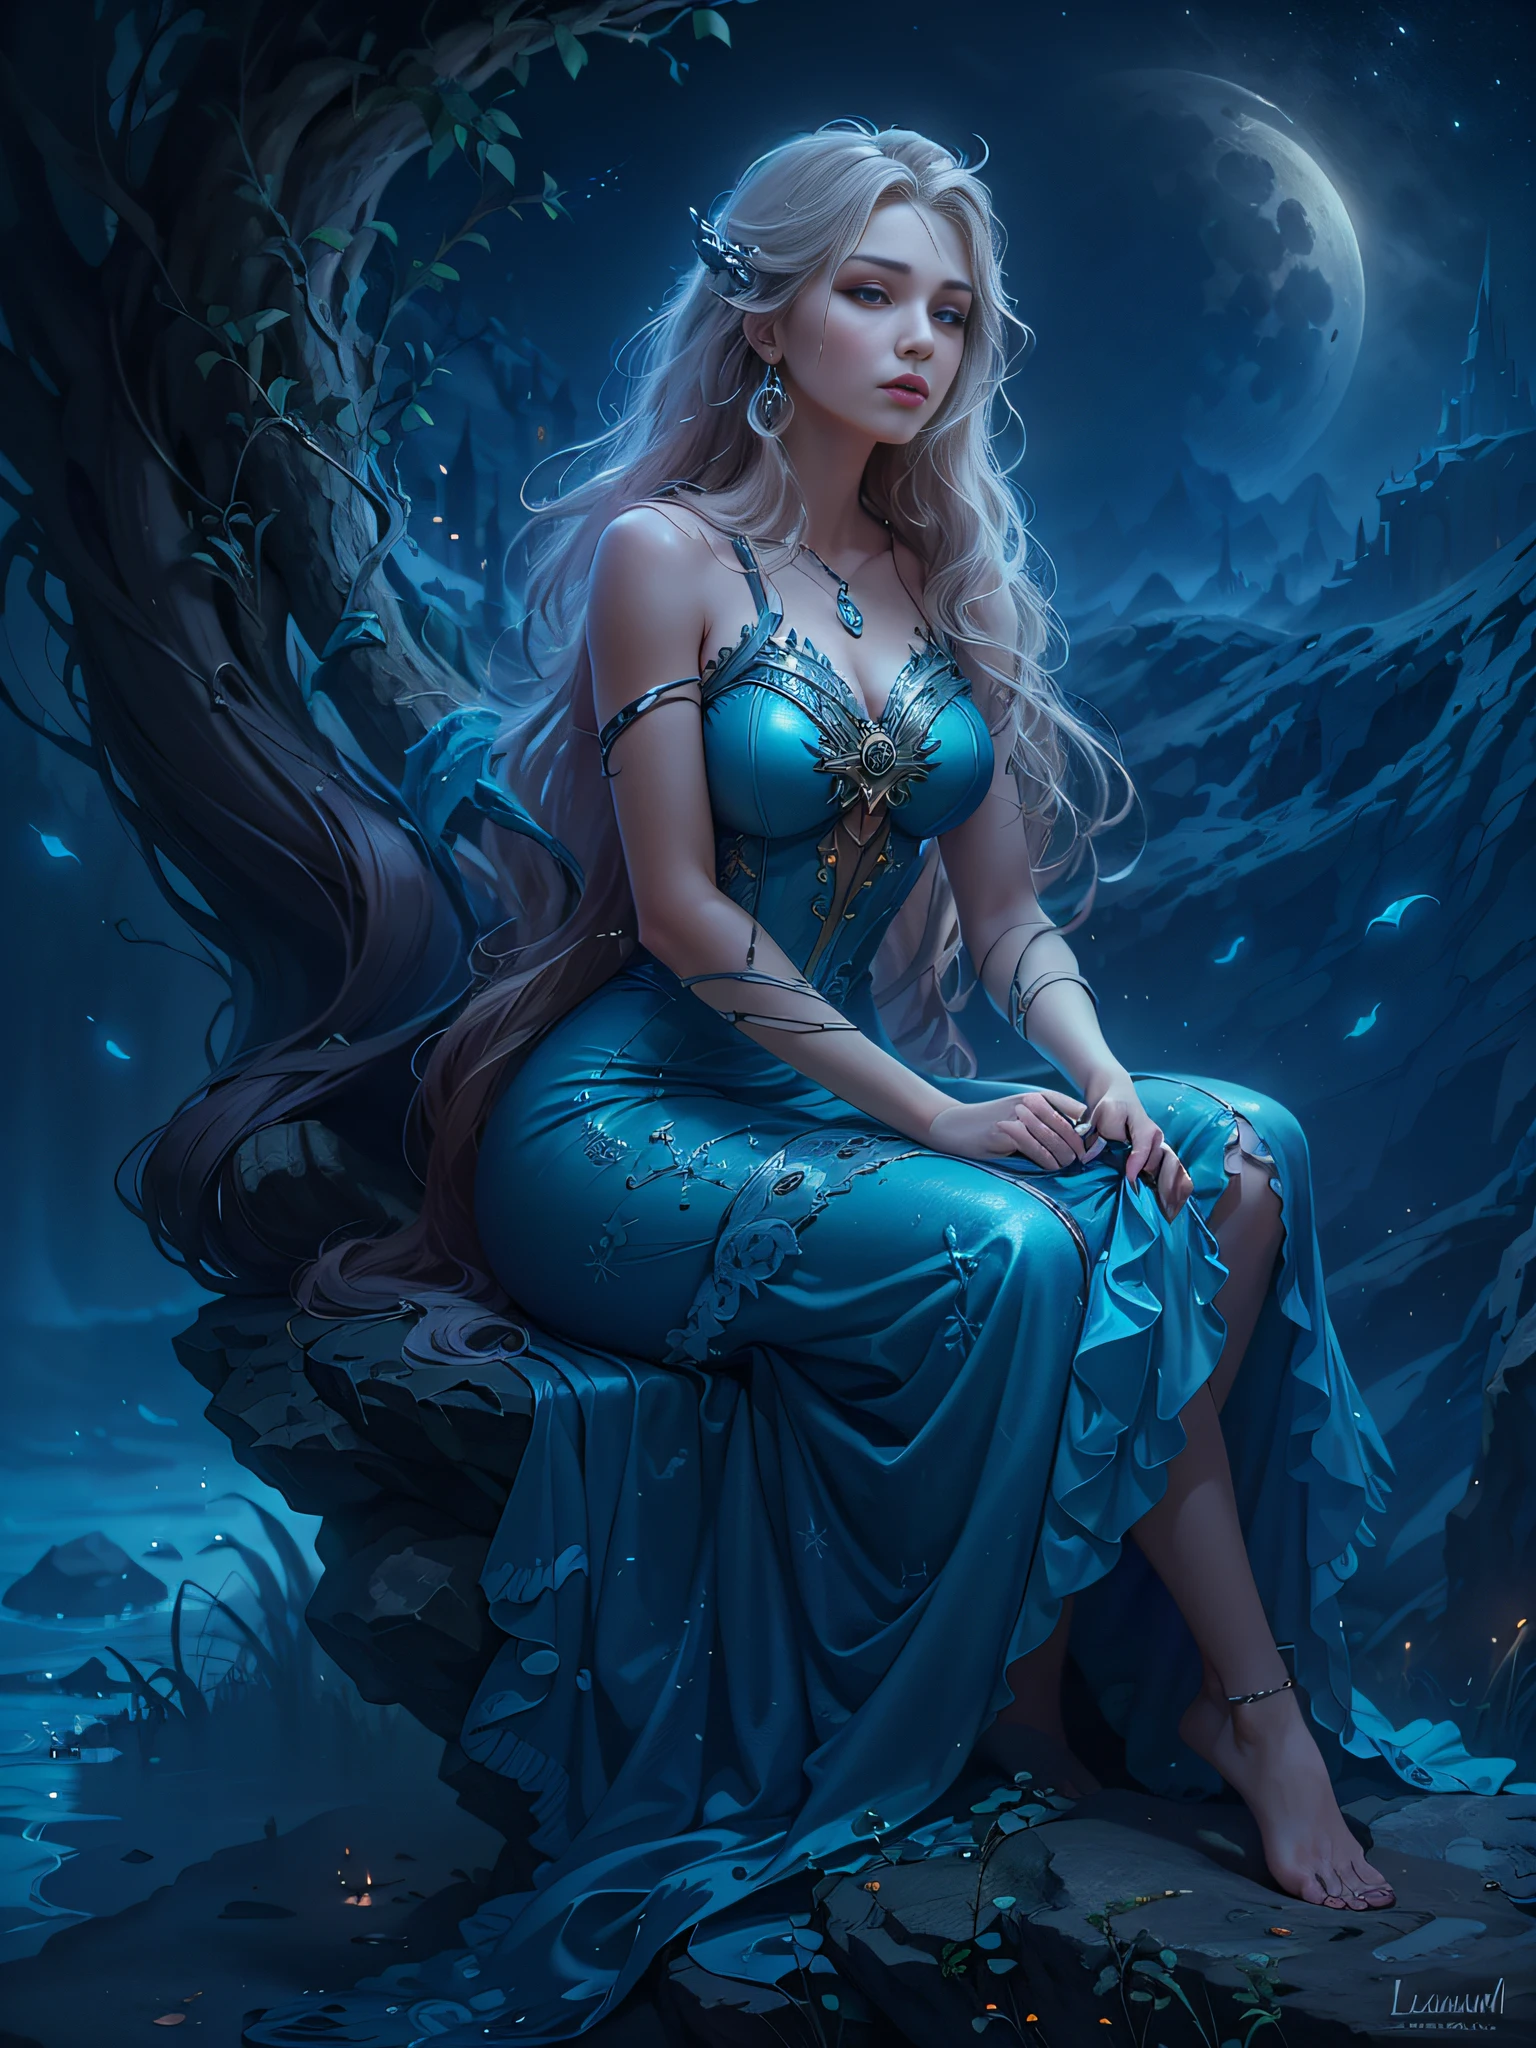 Mujer arafed con un vestido azul sentada sobre una roca., Luciano, diosa lunar, karol detrás uhd, retrato de una diosa de la luna nórdica, noche de luna atmósfera de ensueño, mujer de fantasia, diosa de la luna, sueño mágico、etéreo、misteriosamente, belleza etérea, diosa lunar, Hermosa Rapunzel, hermosa doncella de fantasía, noche de ensueño